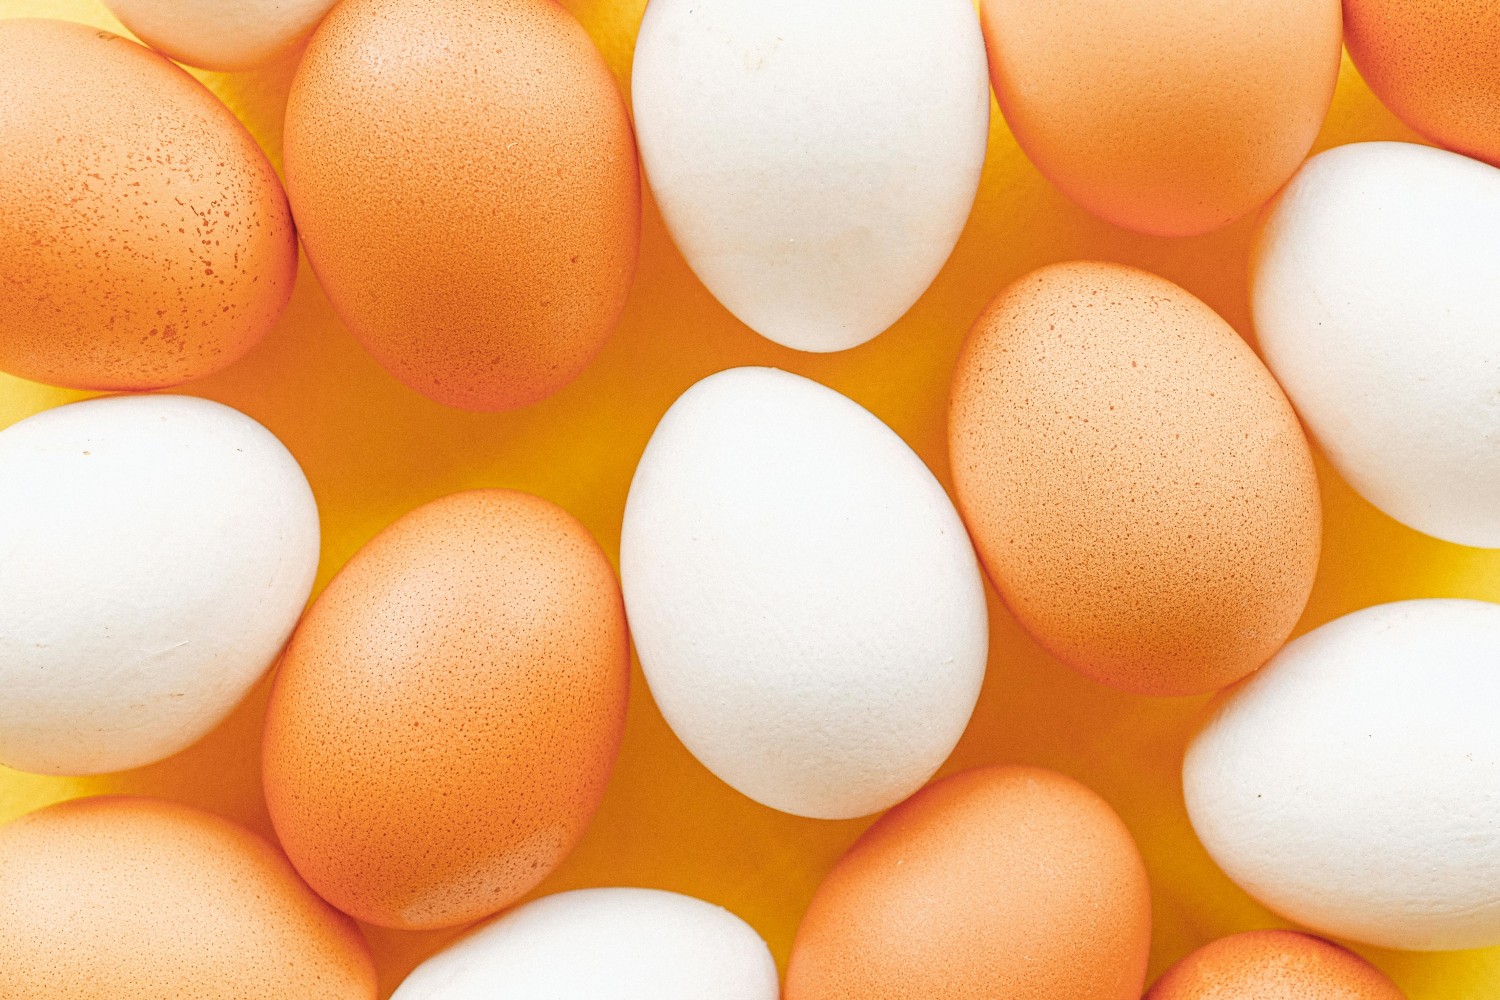 Brazilian Egg Producer Granja Faria Acquires Vitagema 